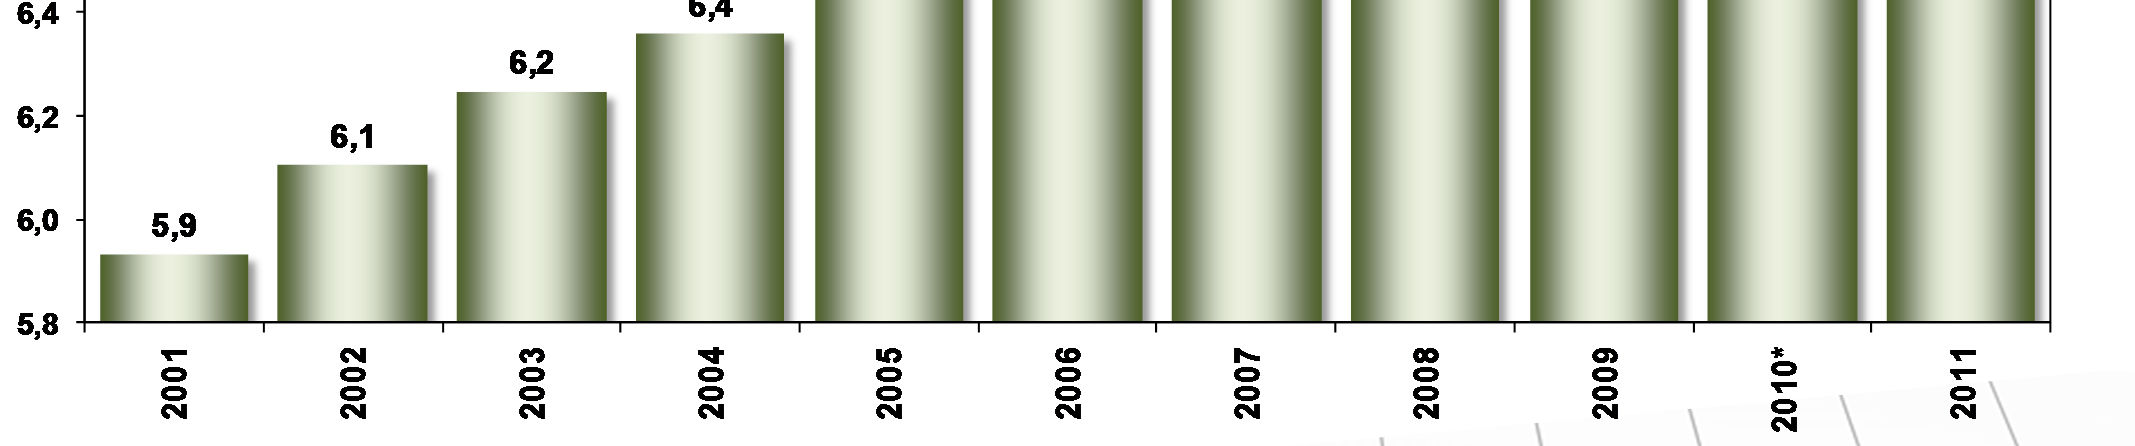 25 ANOS DE IDADE 2001-2011